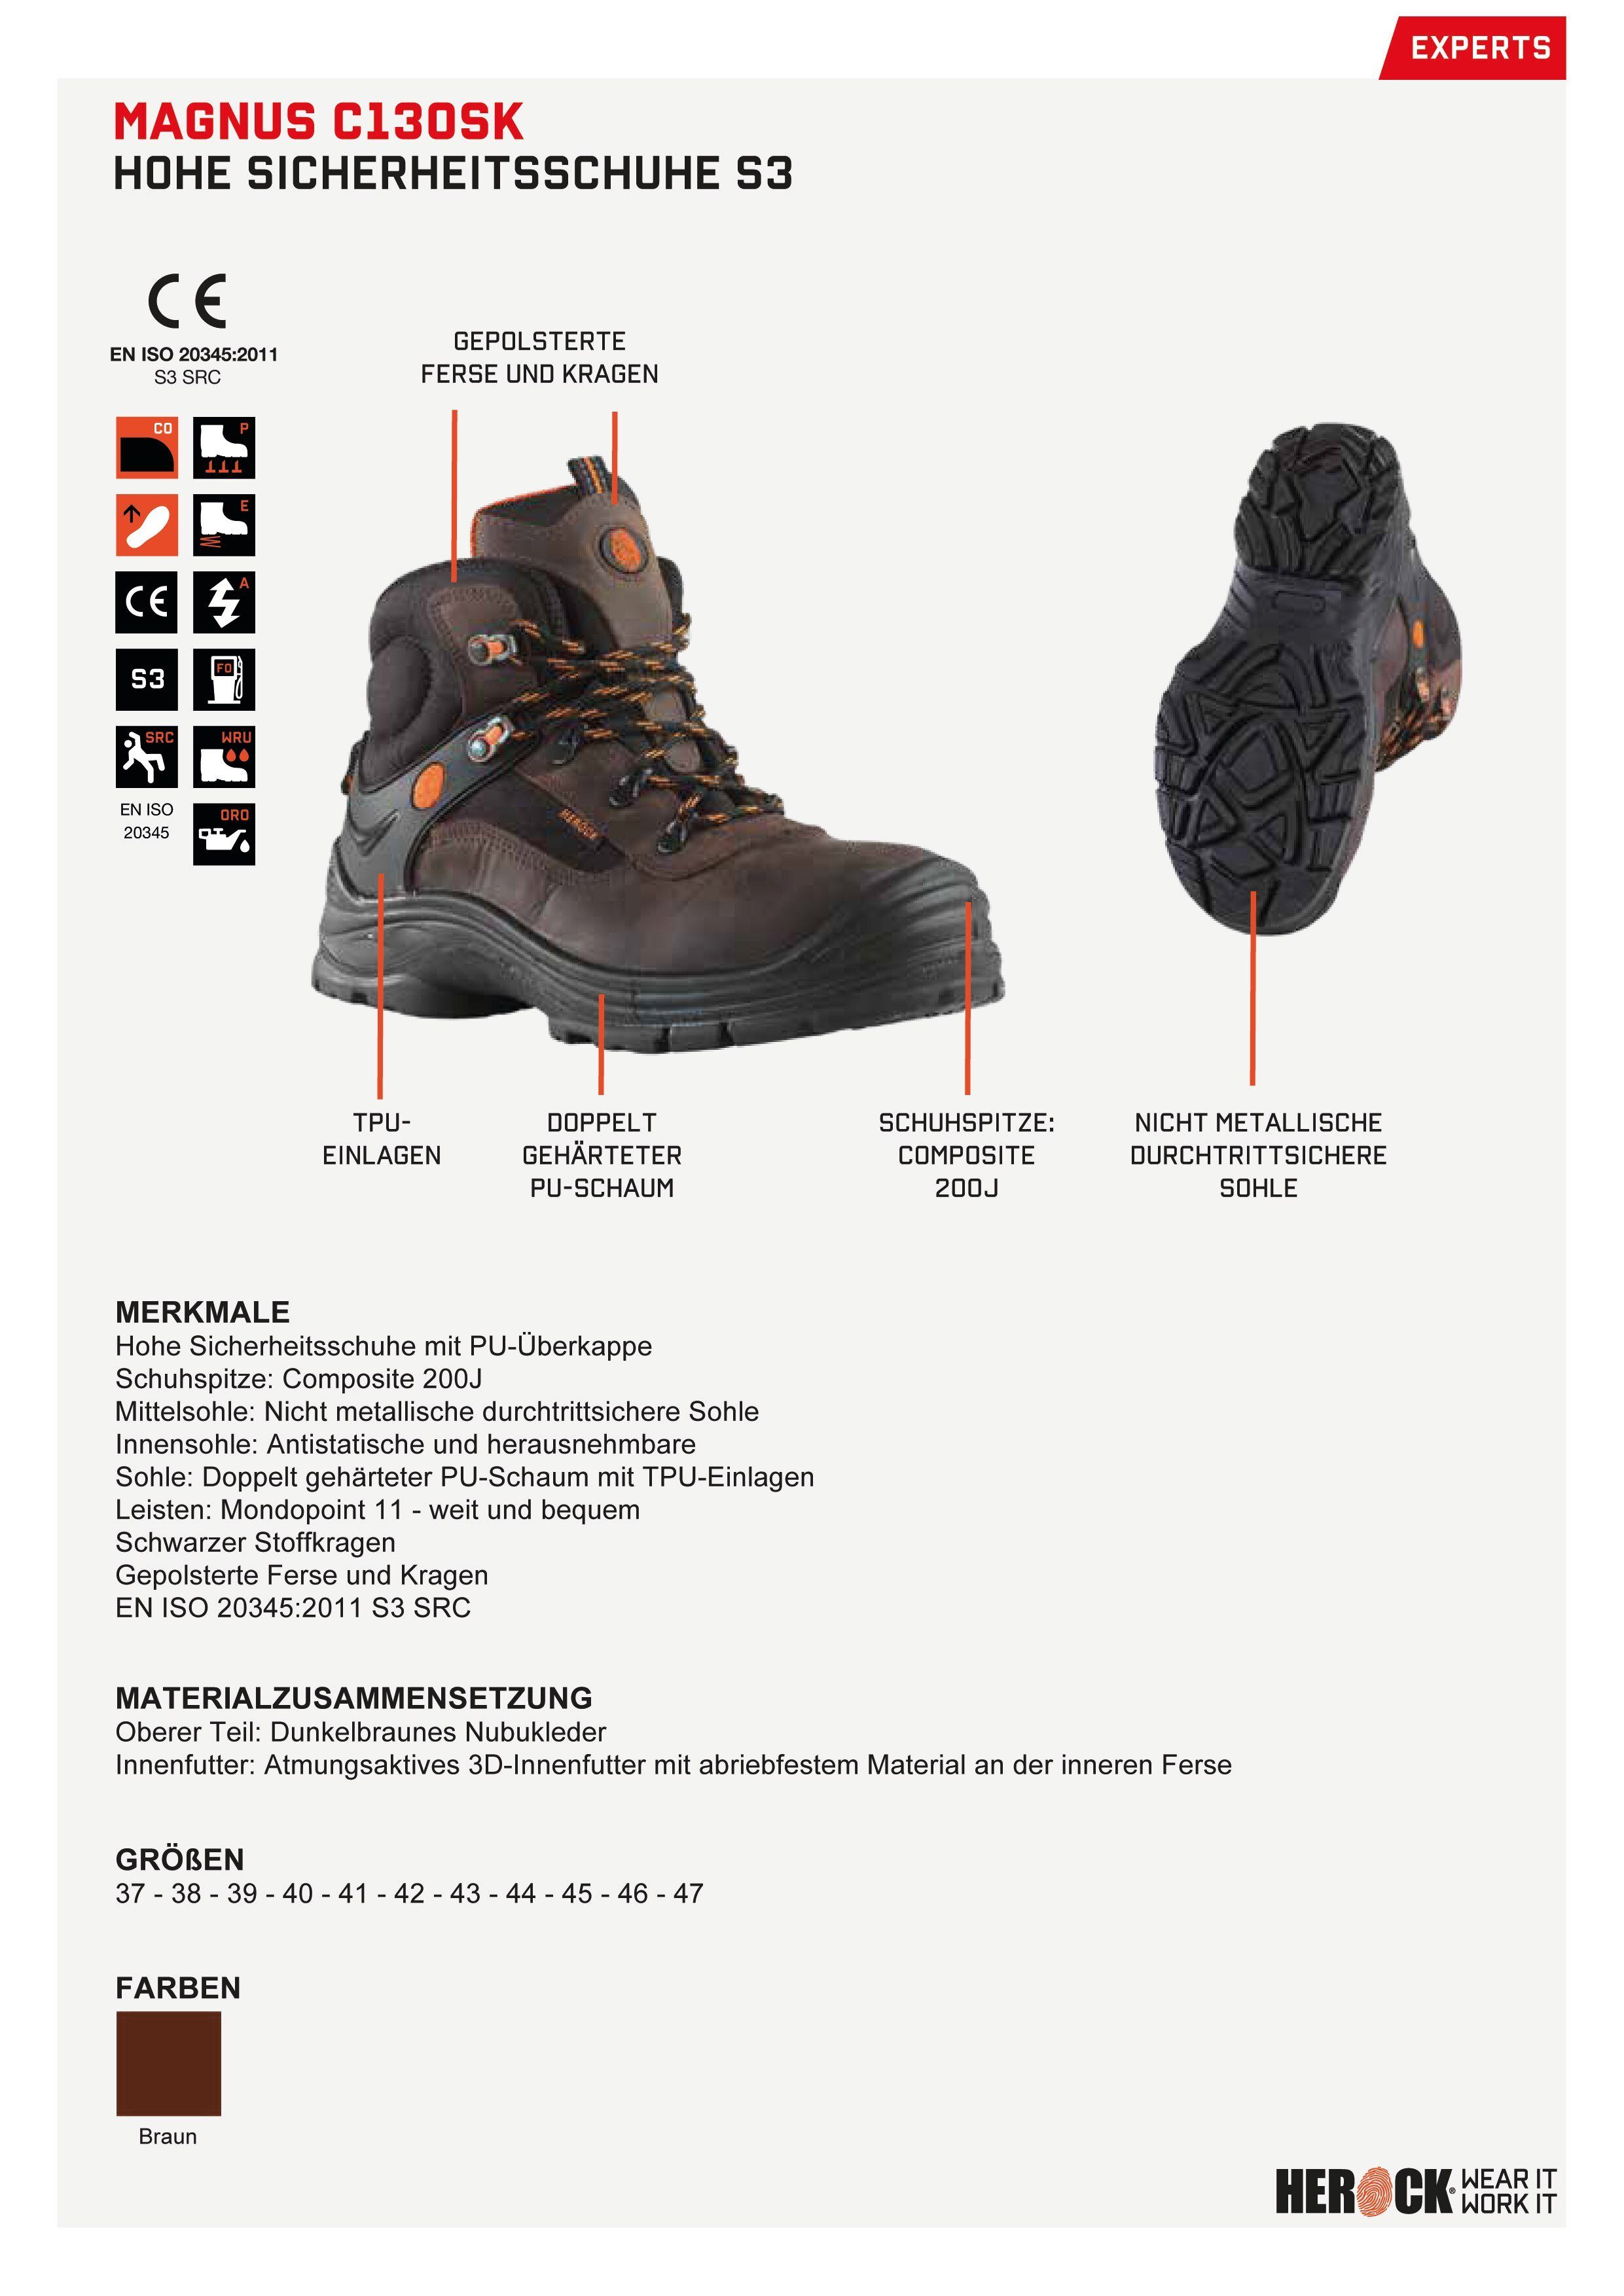 Herock Magnus High weit, Klasse Compo Schuhe durchtrittsicher, nicht-metallisch, S3 Leder, Echtes Sicherheitsschuh S3